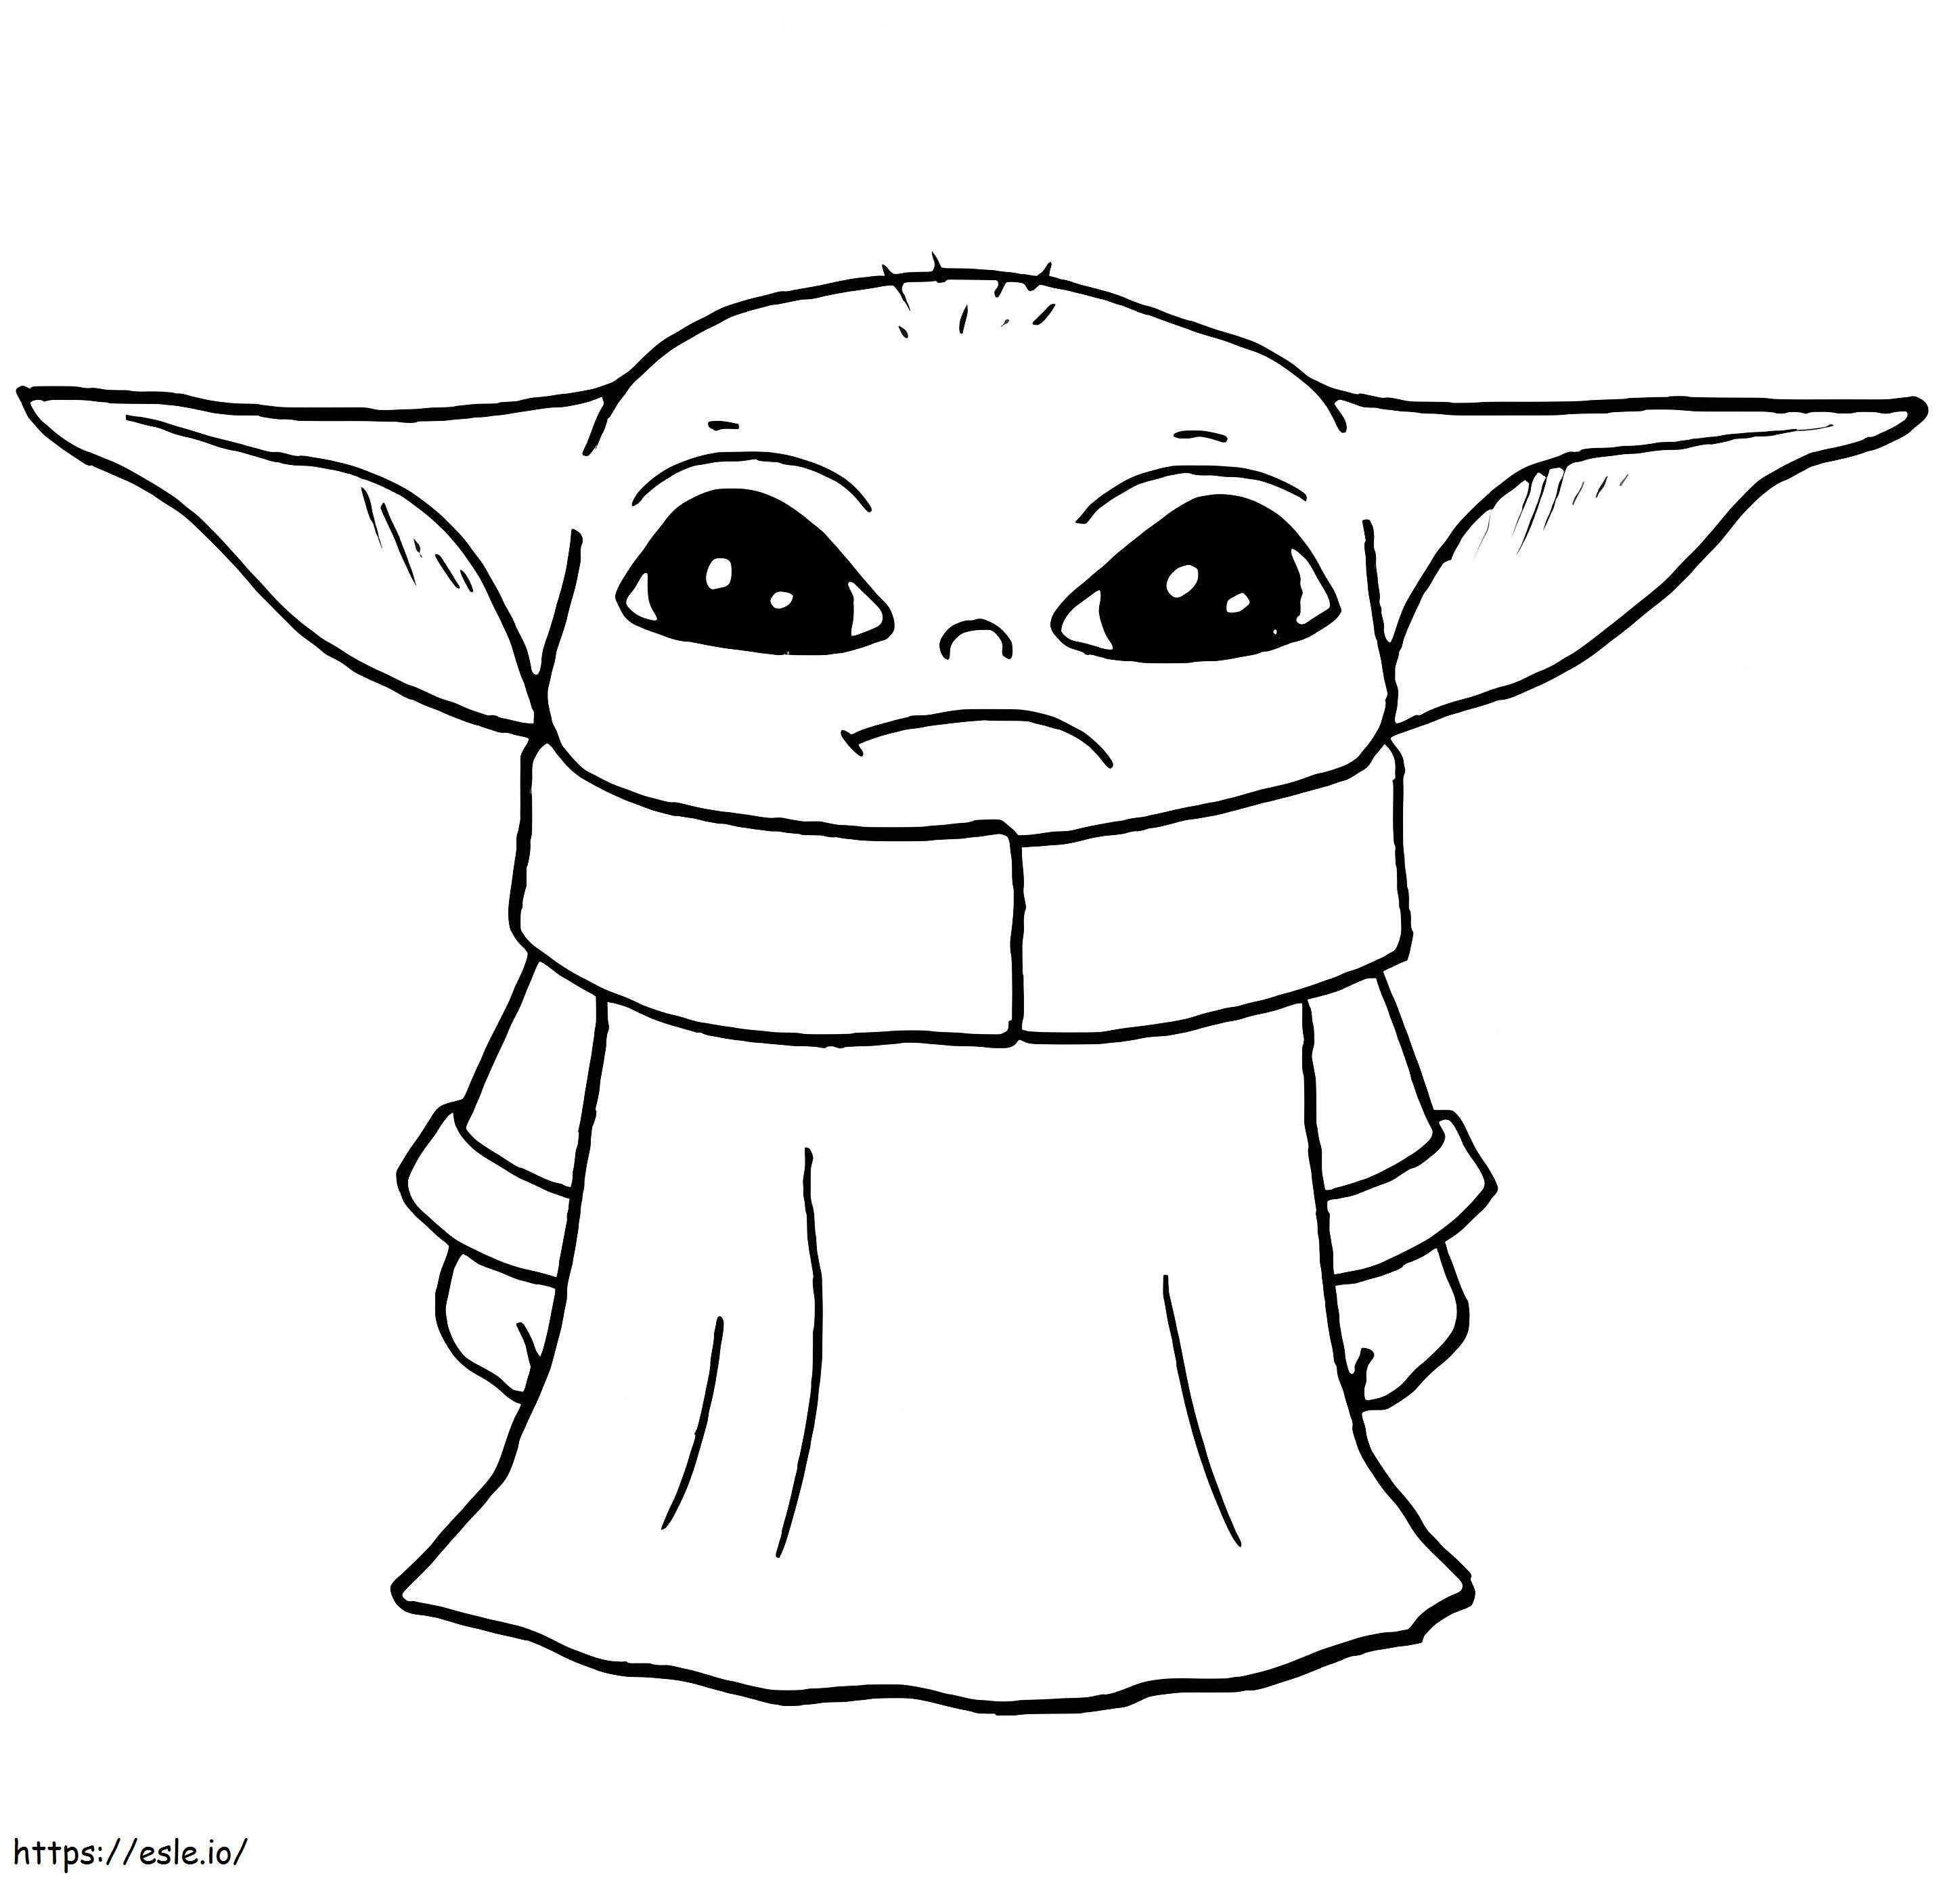 Coloriage Malheureux bébé Yoda à imprimer dessin